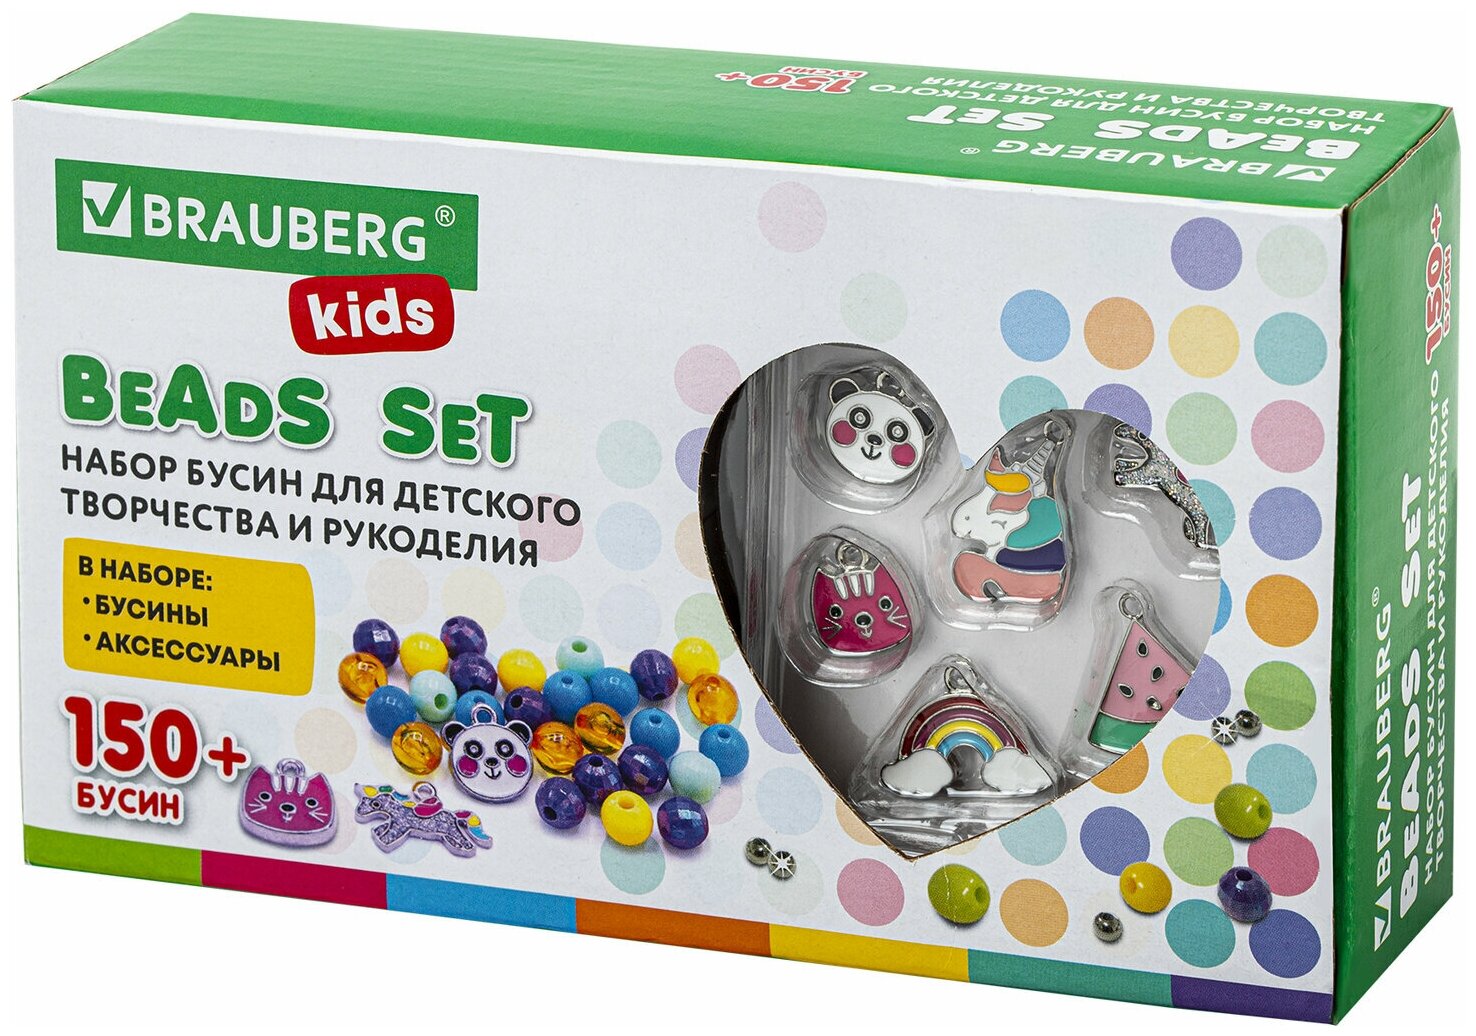 Набор Beads Set для творчества, рукоделия, и создания украшений Единороги, 150 бусин, 6 металлических шармов, резинка, Brauberg Kids, 664699